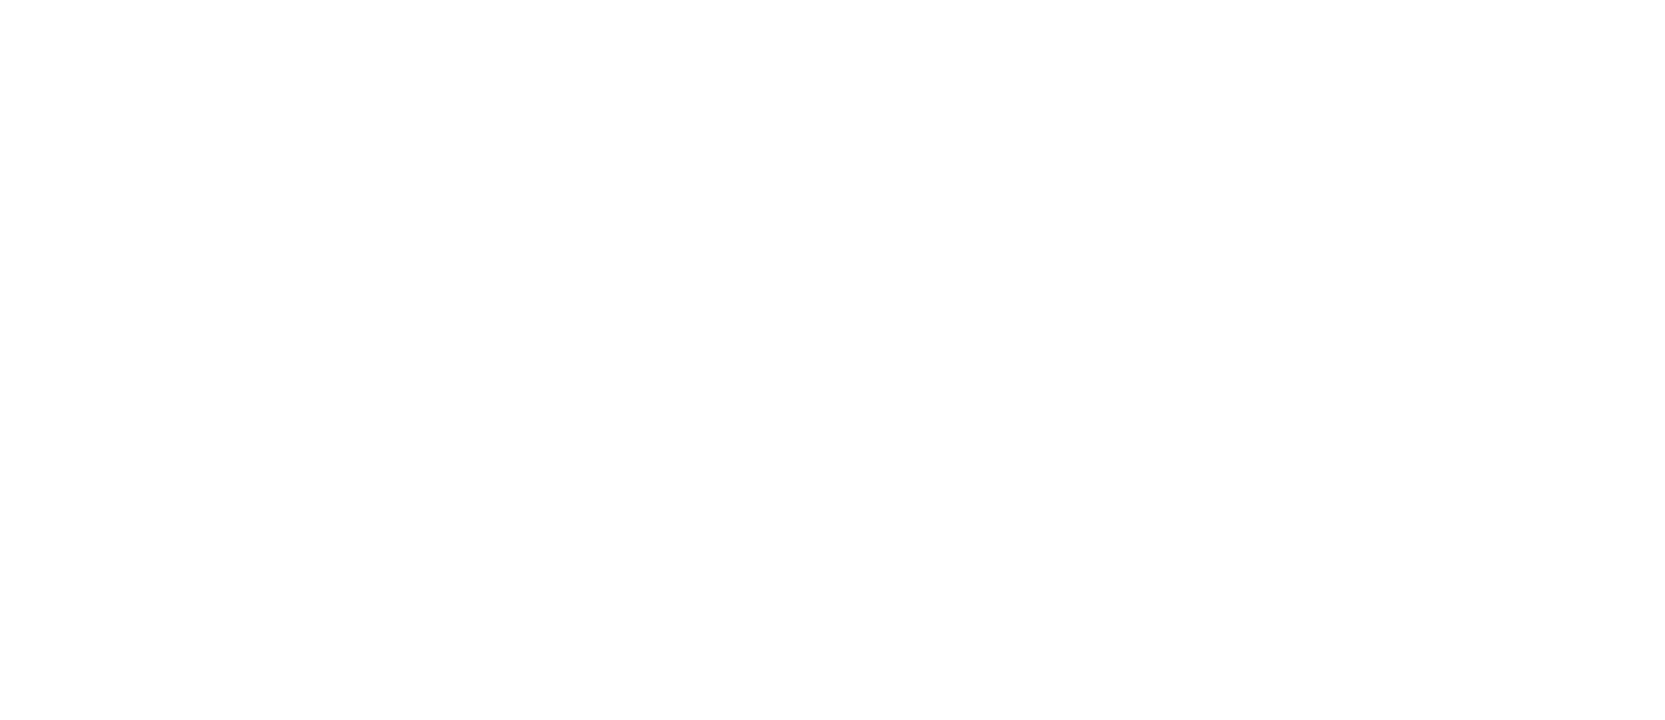  E-COM KASSA облачные кассы и автоматизации для бизнеса 